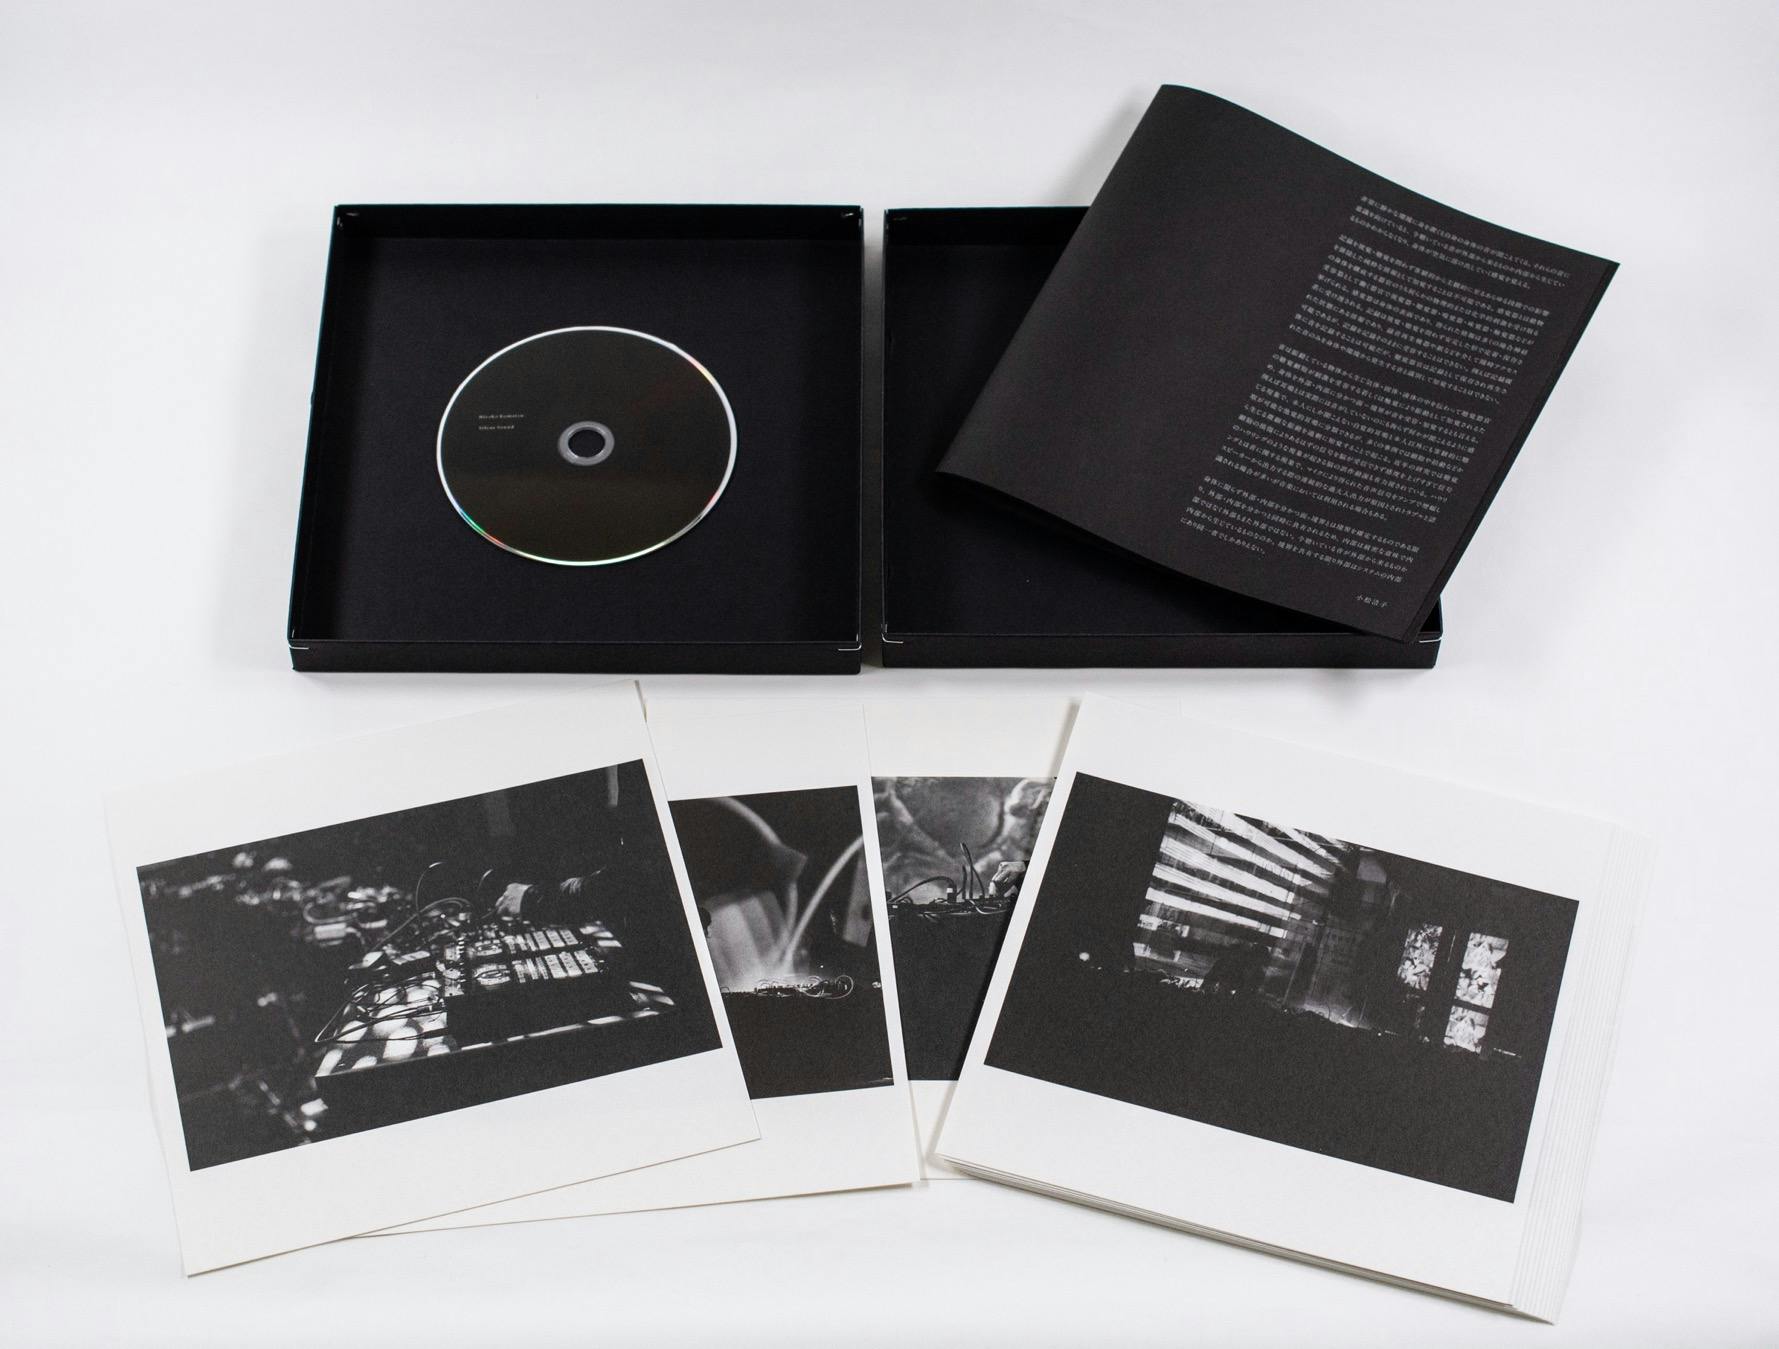 箱の内容は上段左から順にDVD、ブックレット、下段：オフセット印刷写真15枚(見本画像)